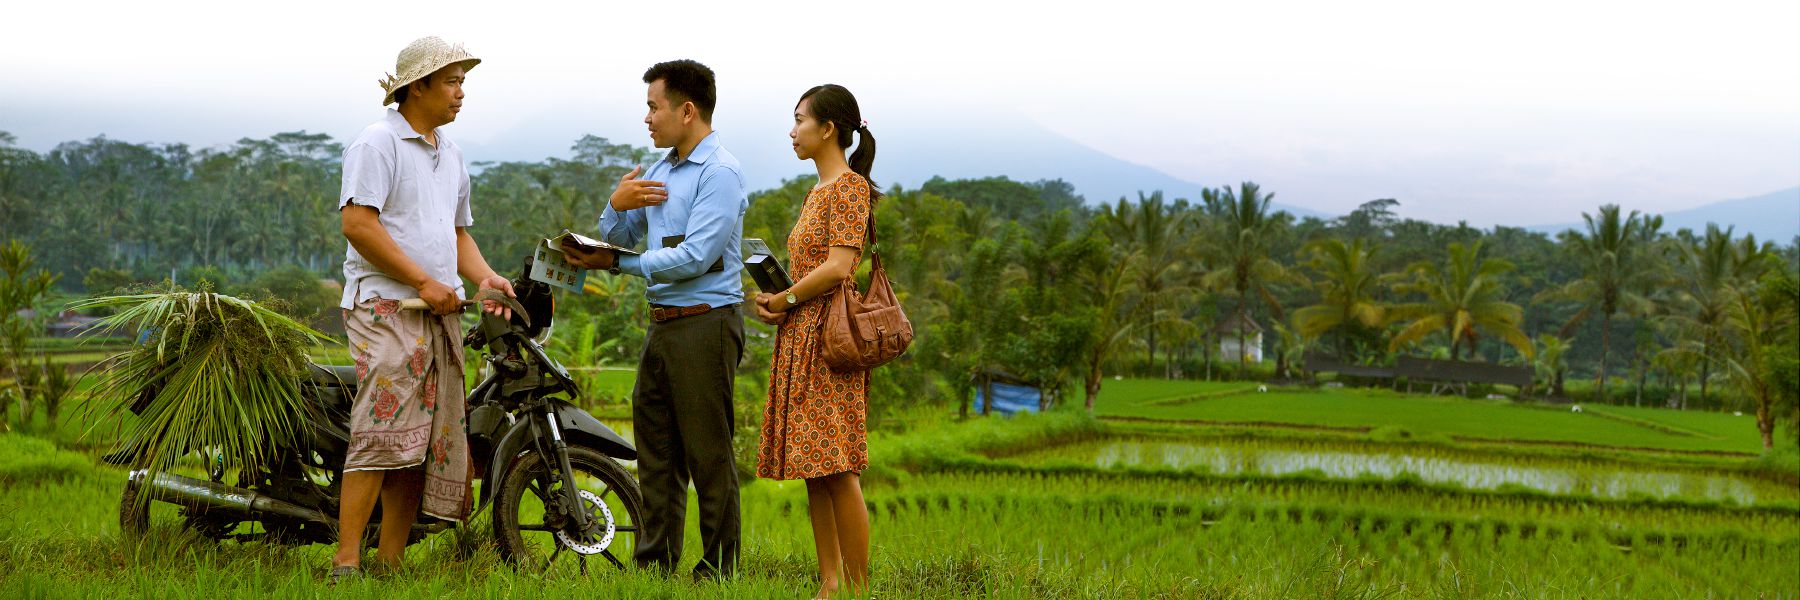 Twee Getuigen van Jehovah prediken tot een man in een rijstveld.